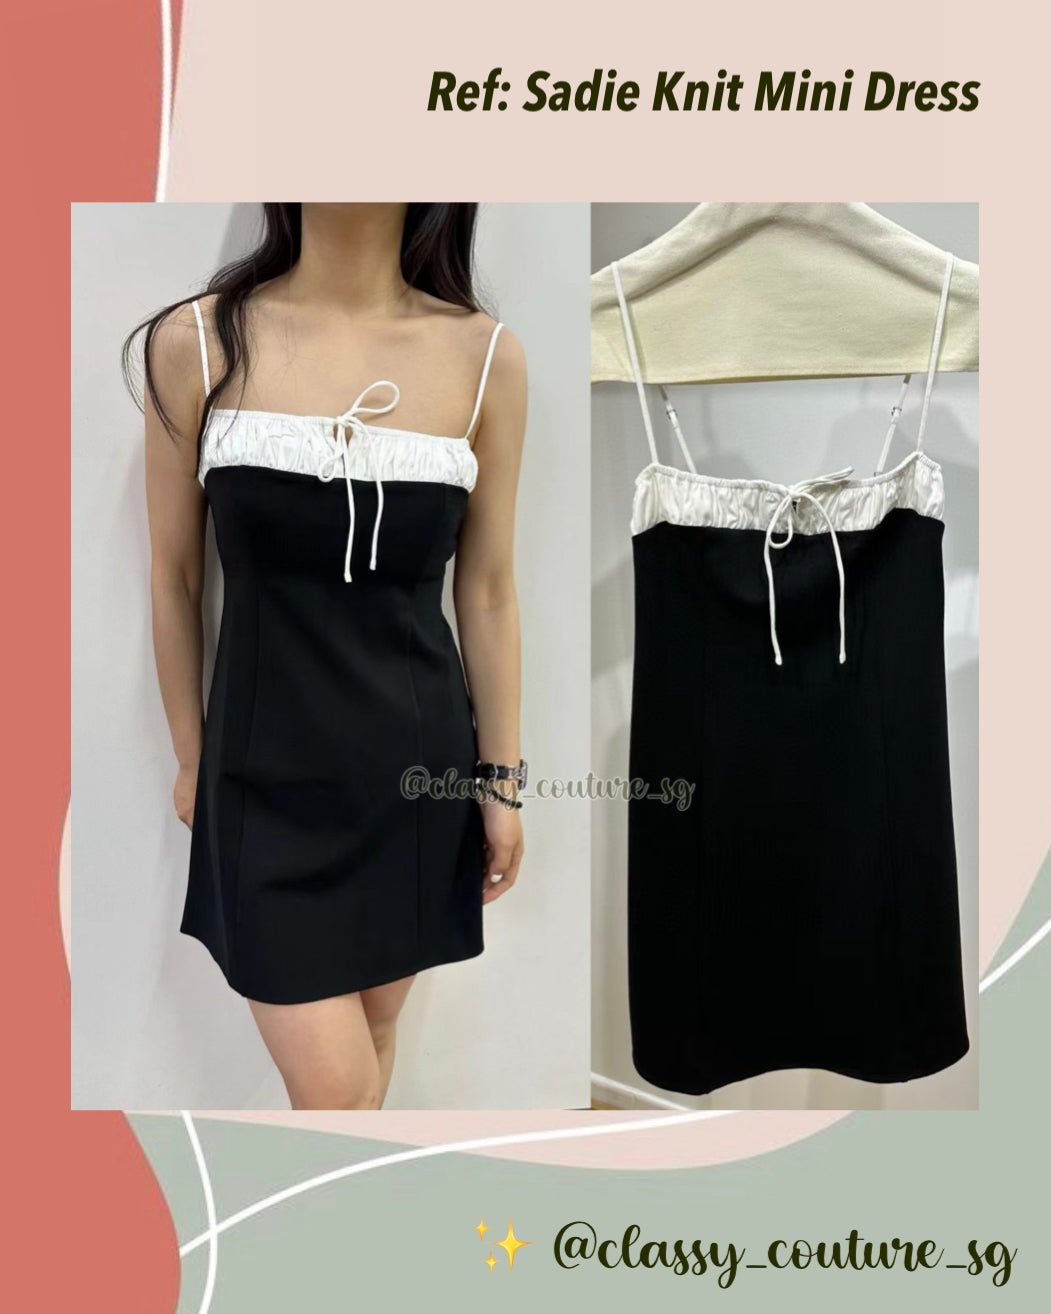 Ref Sadie Knit Mini Dress in Black/white